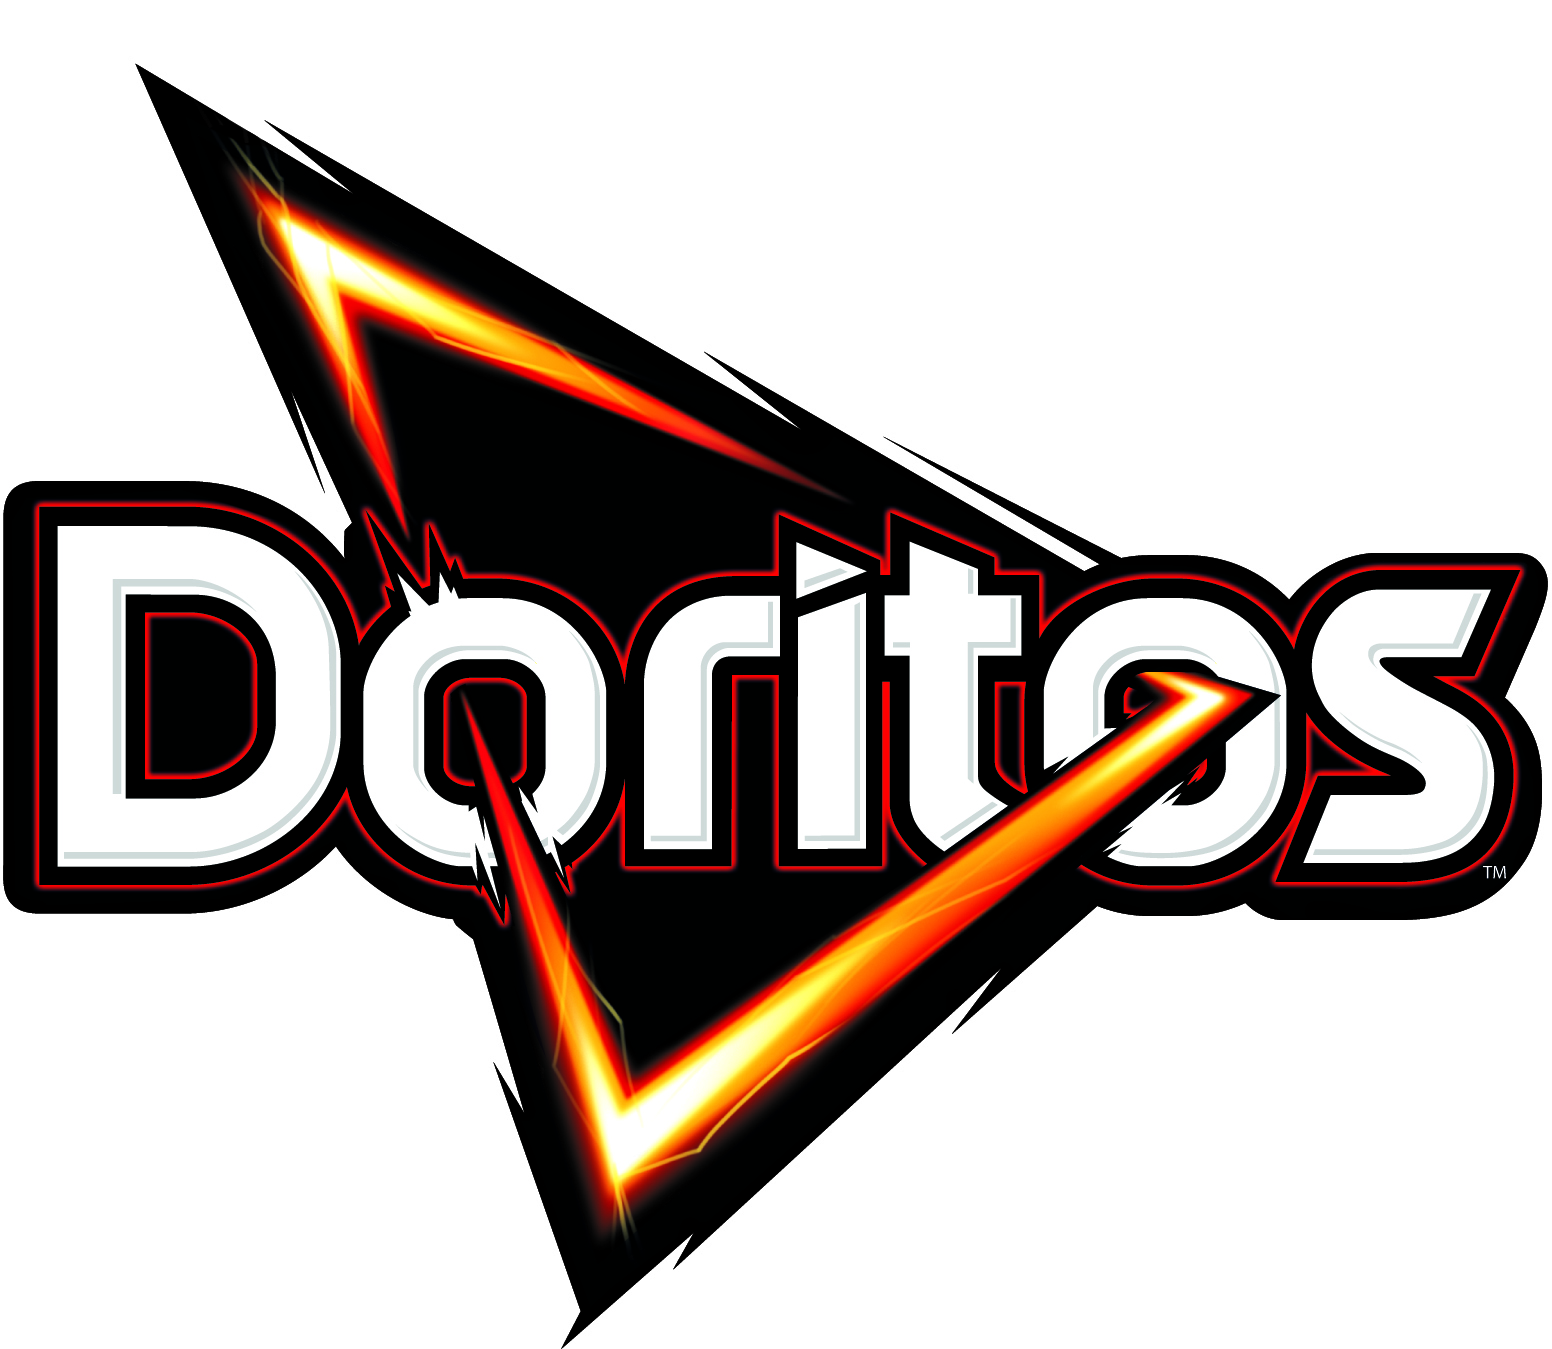 Doritos event artwork design